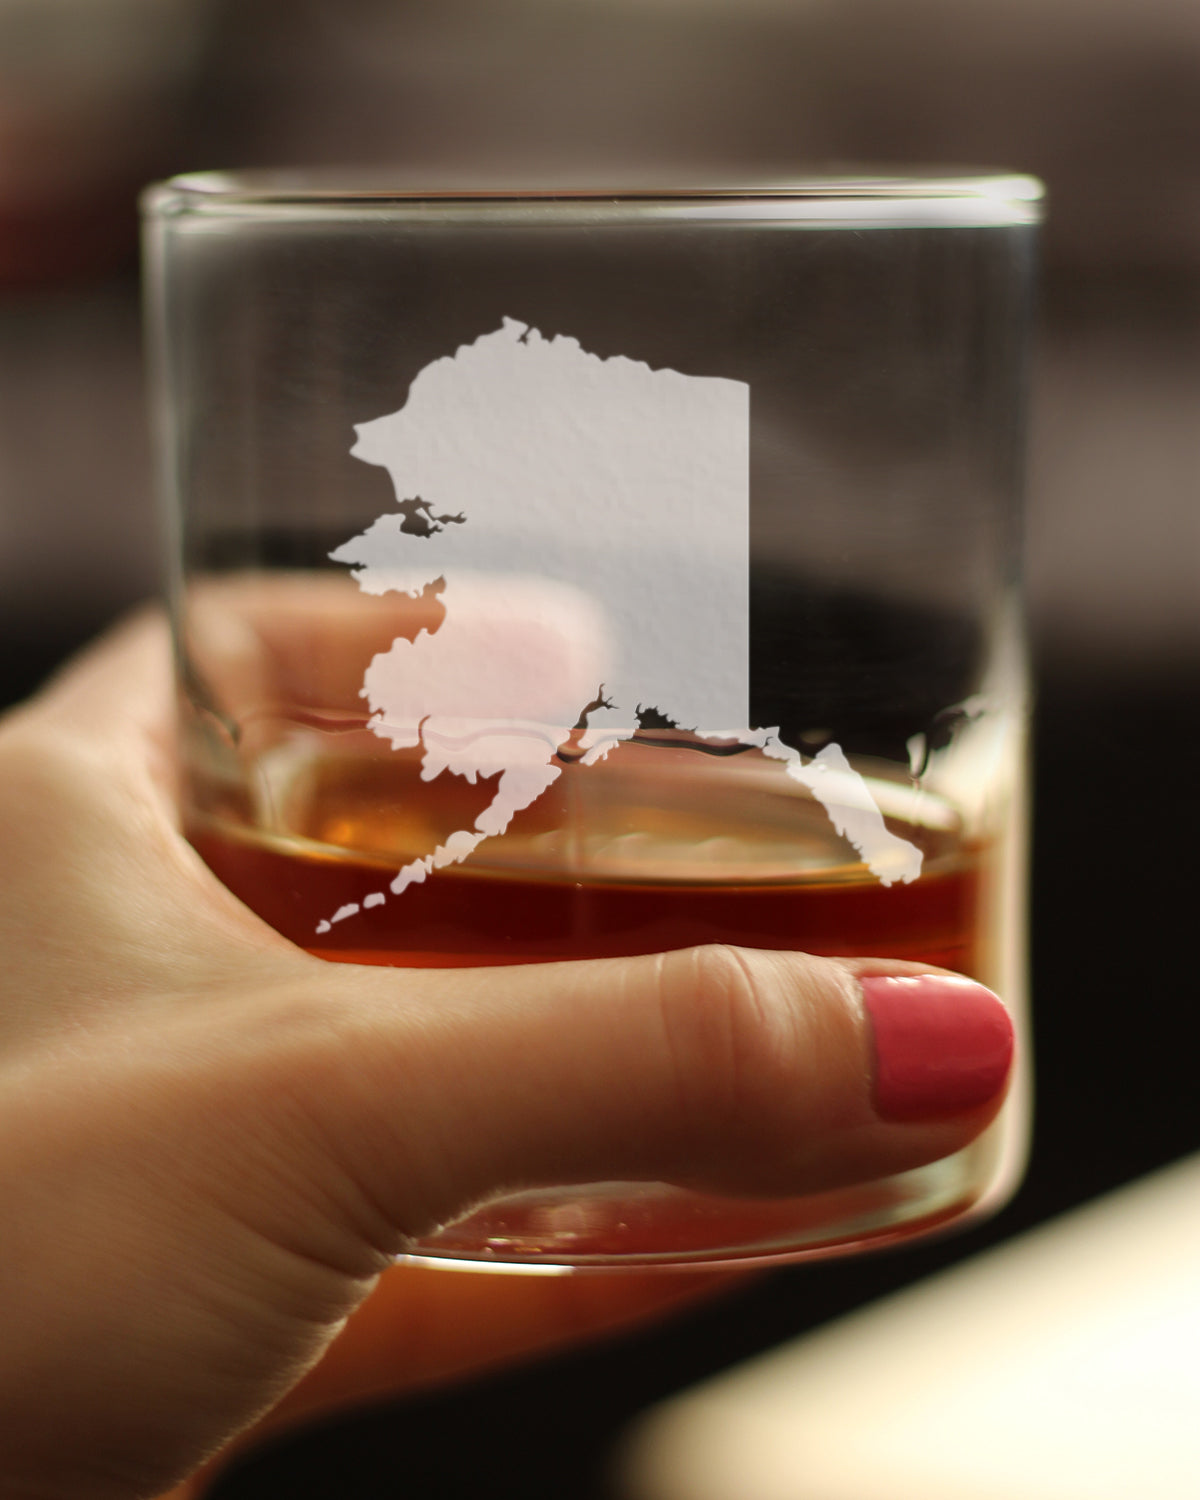 Alaska State Outline Whiskey Rocks Glass - State Themed Drinking Decor and Gifts for Alaskan Women &amp; Men - 10.25 Oz Whisky Tumbler Glasses